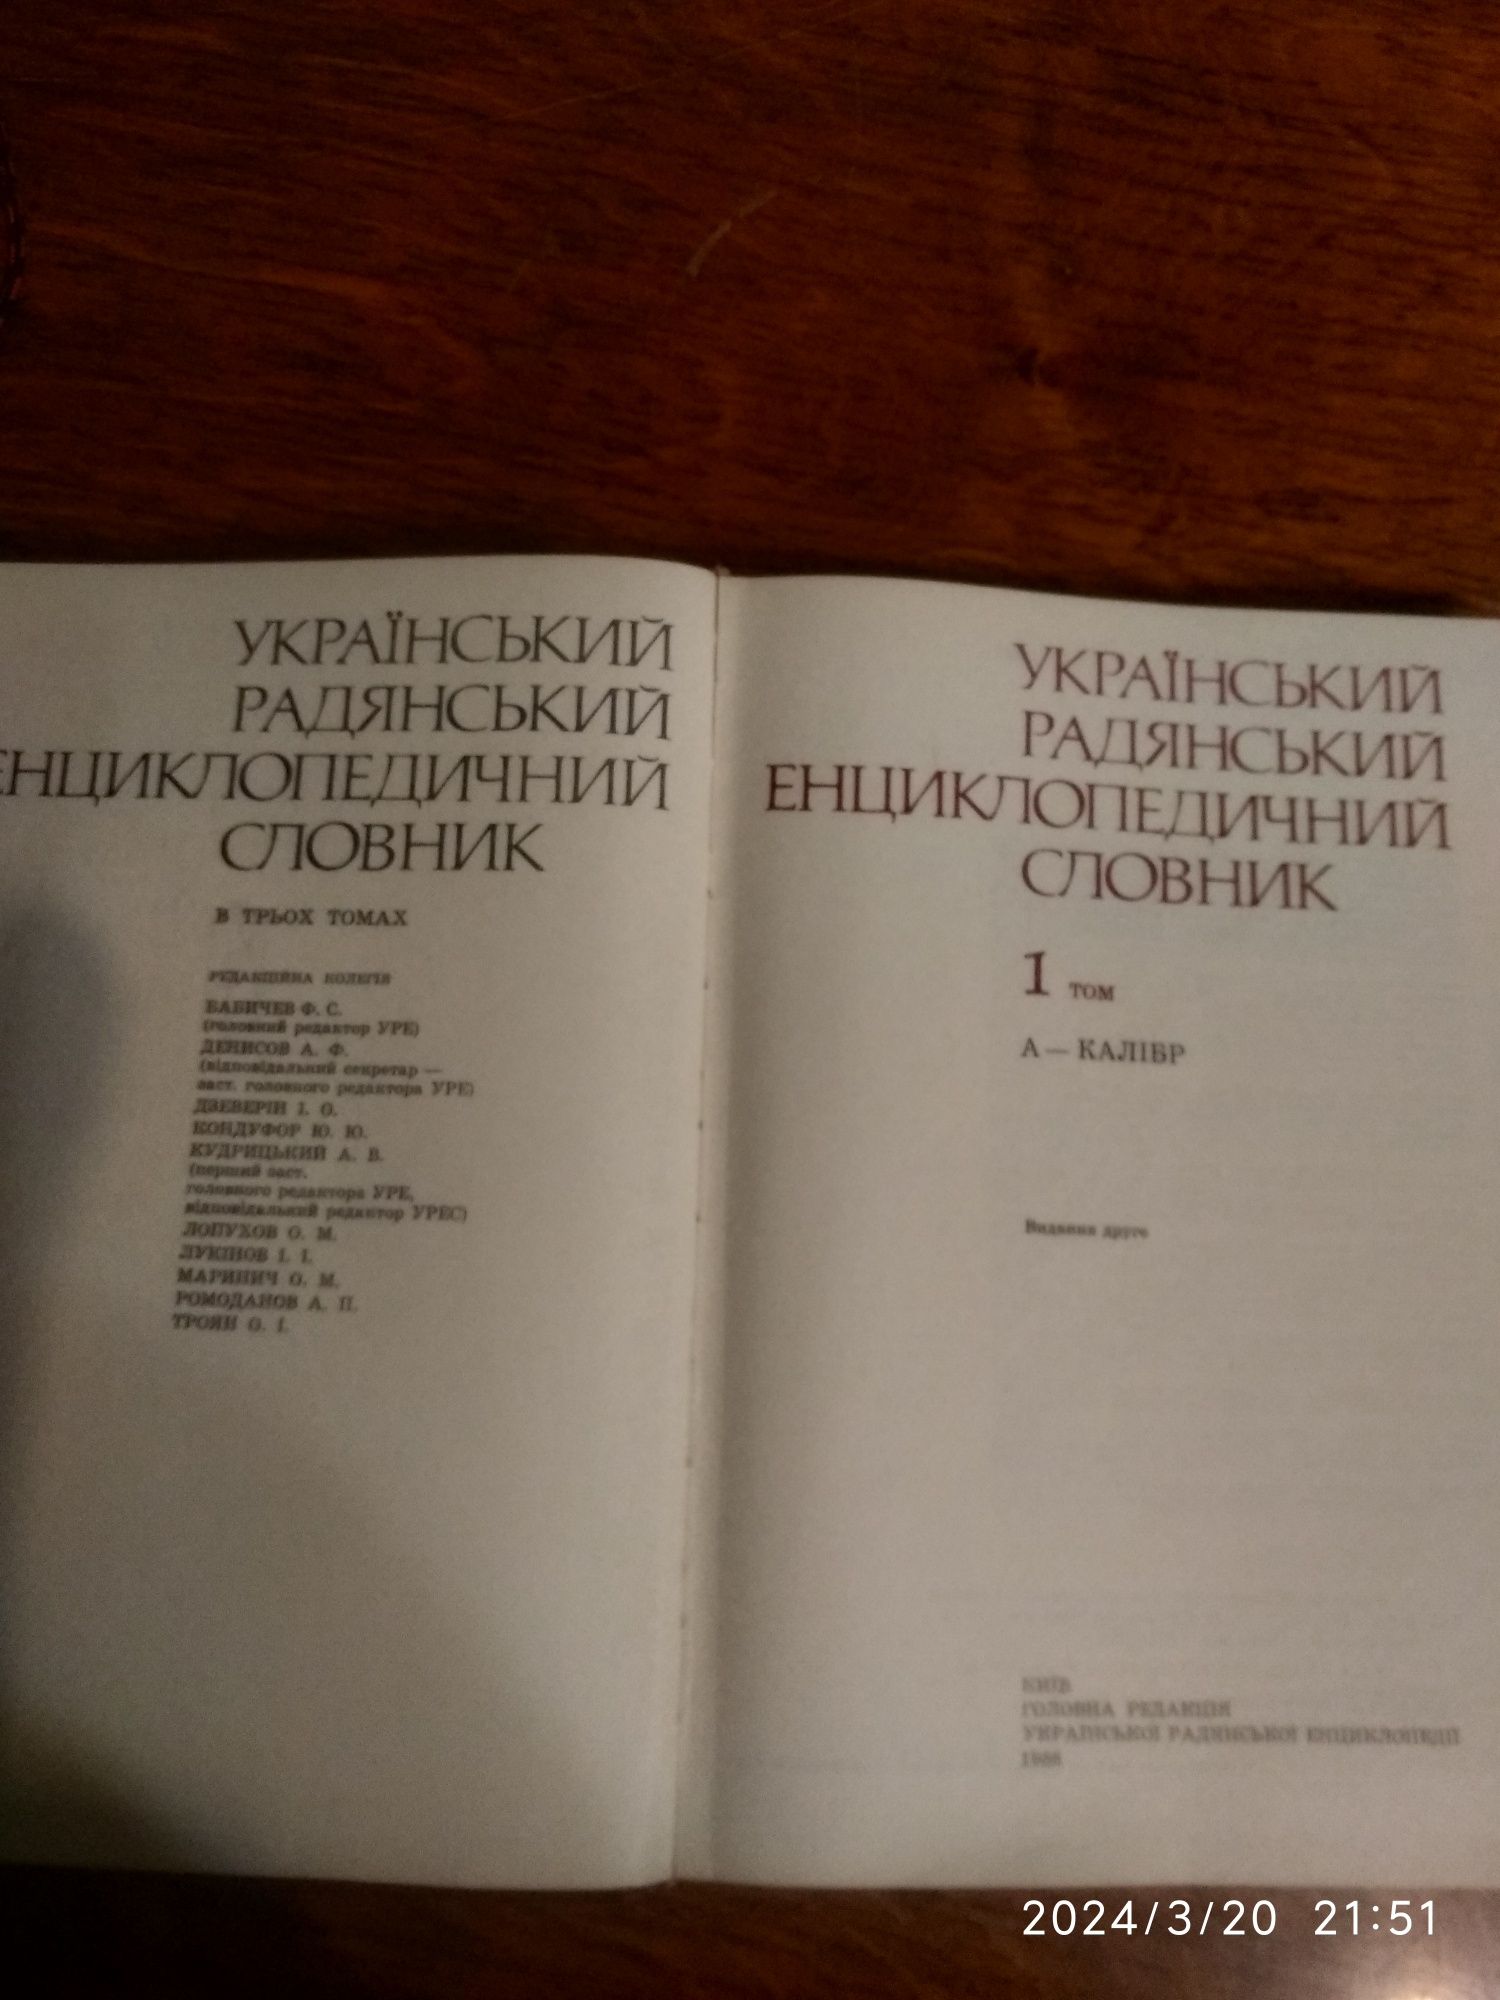 Трьохтомник енциклопедичного словника